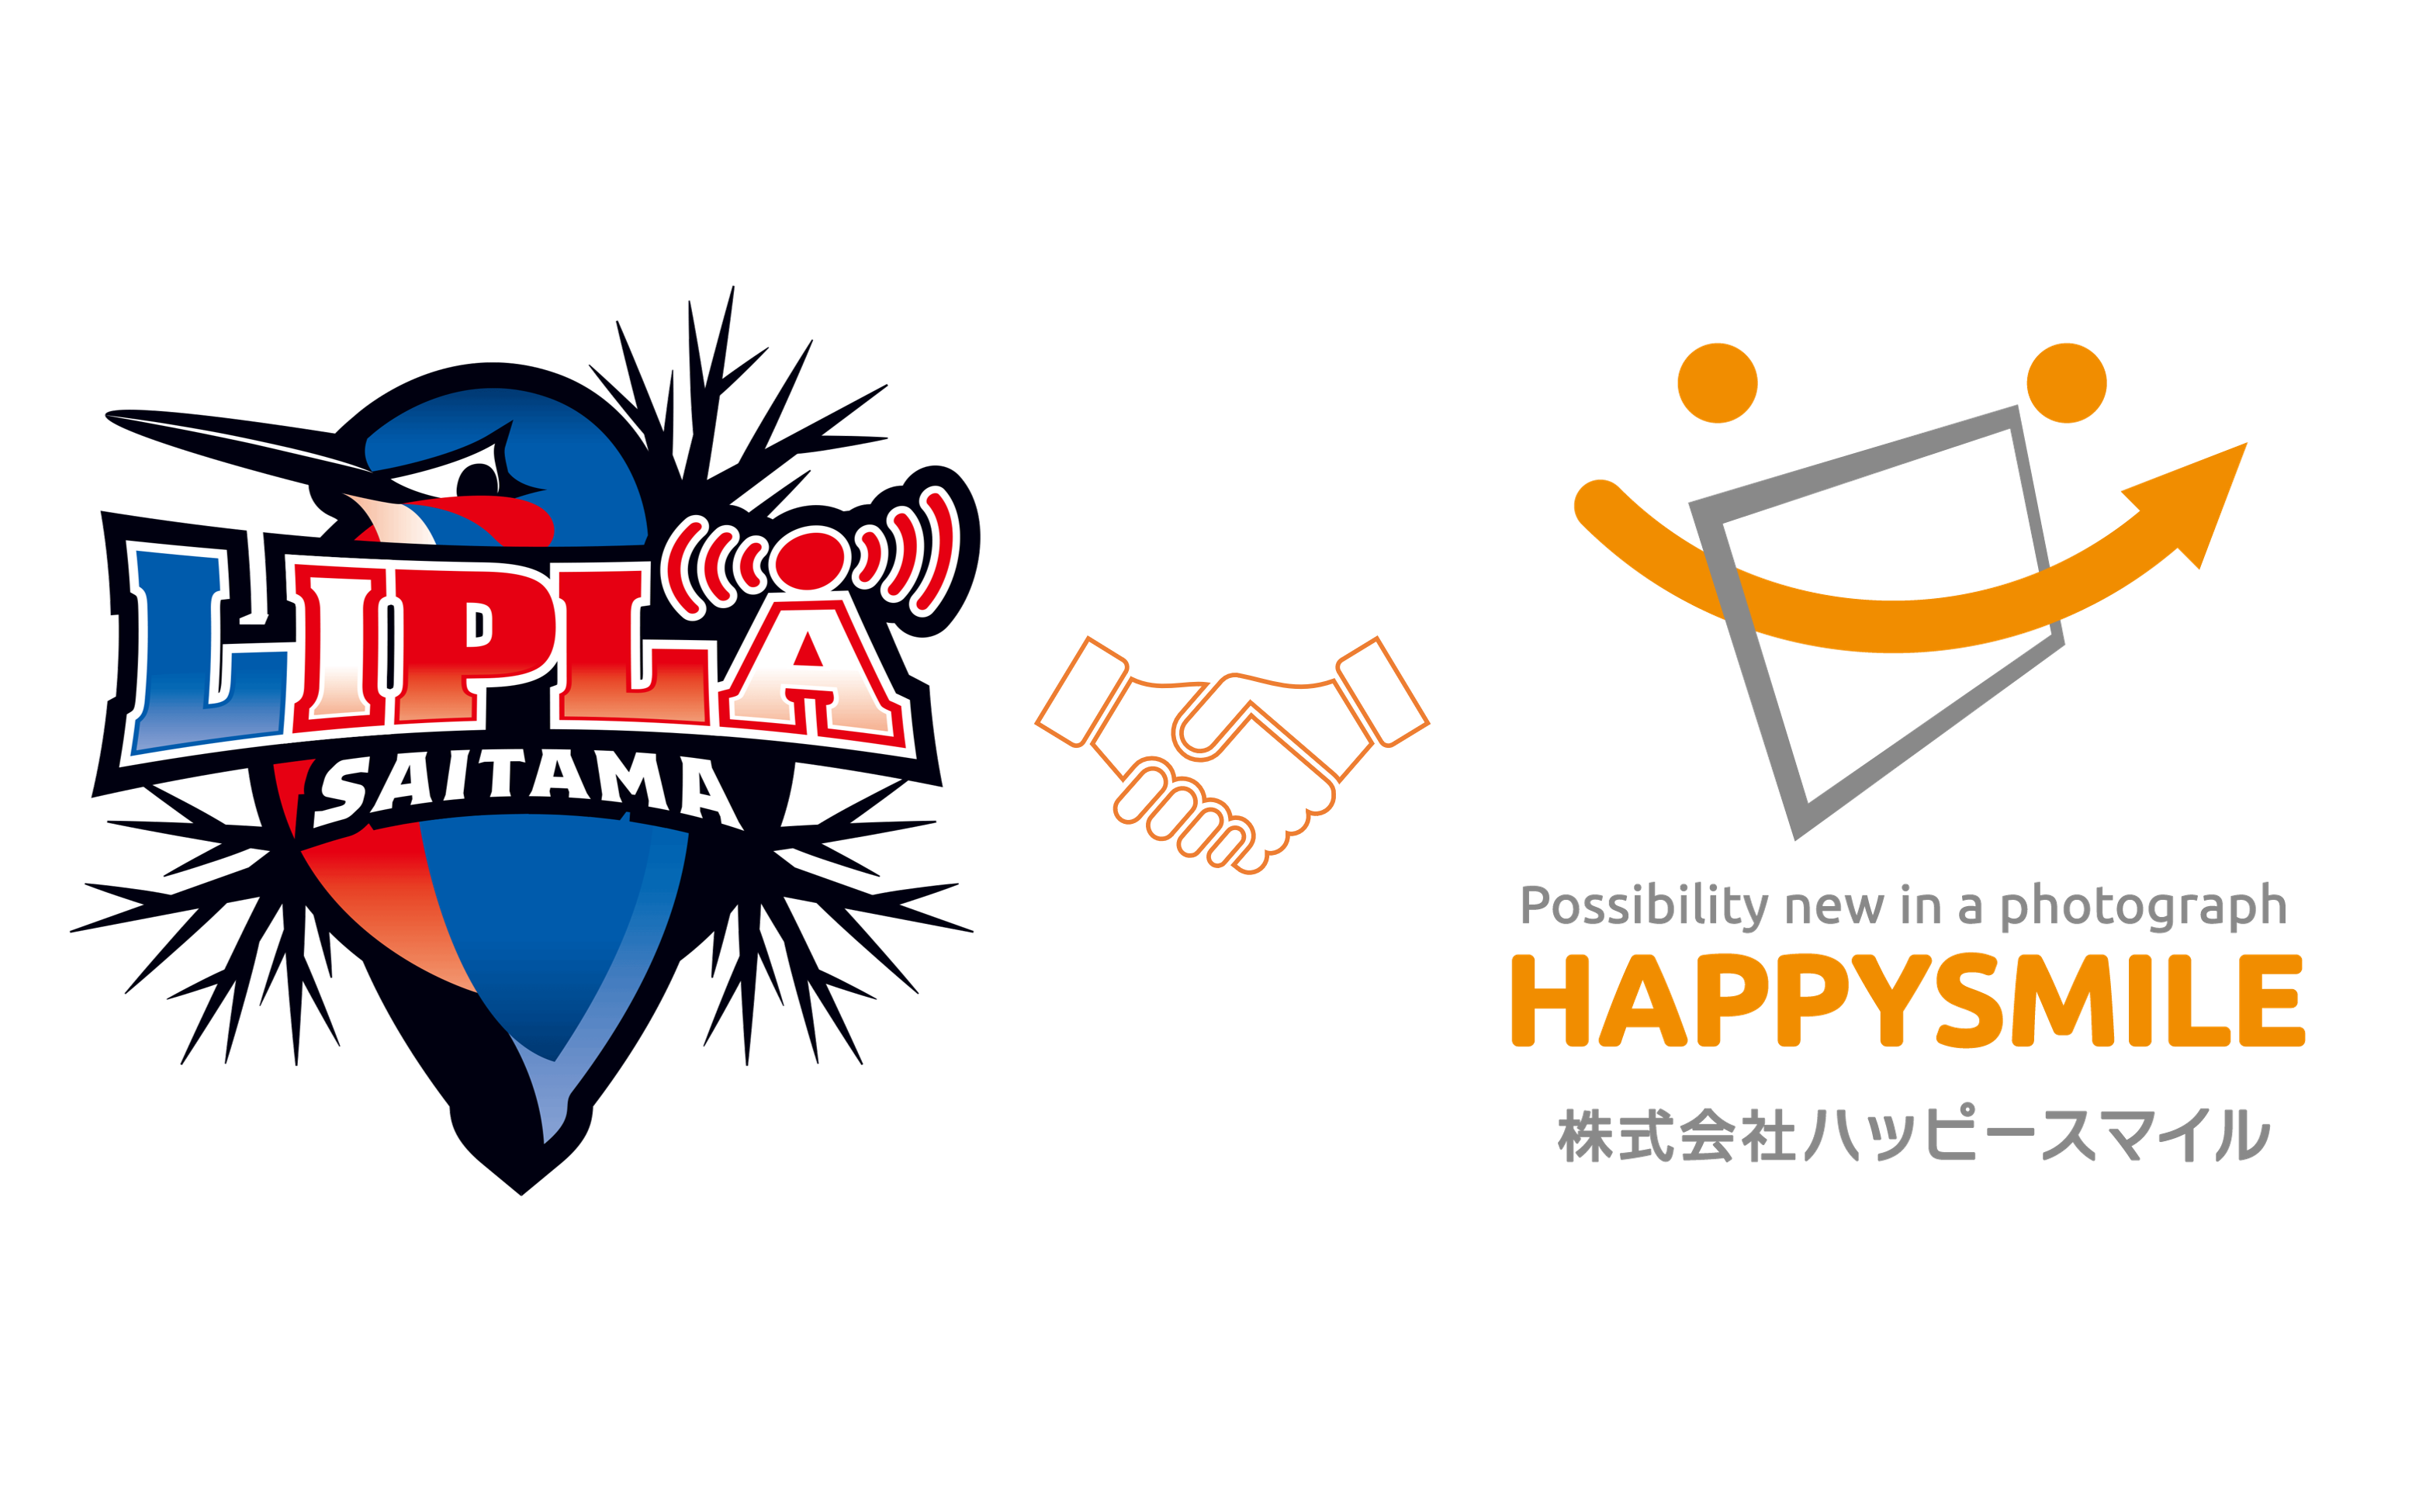 ３人制バスケットボールリーグ３XS『SAITAMA LIPLA』 × 株式会社ハッピースマイル『みんなのおもいで.com』導入契約を締結